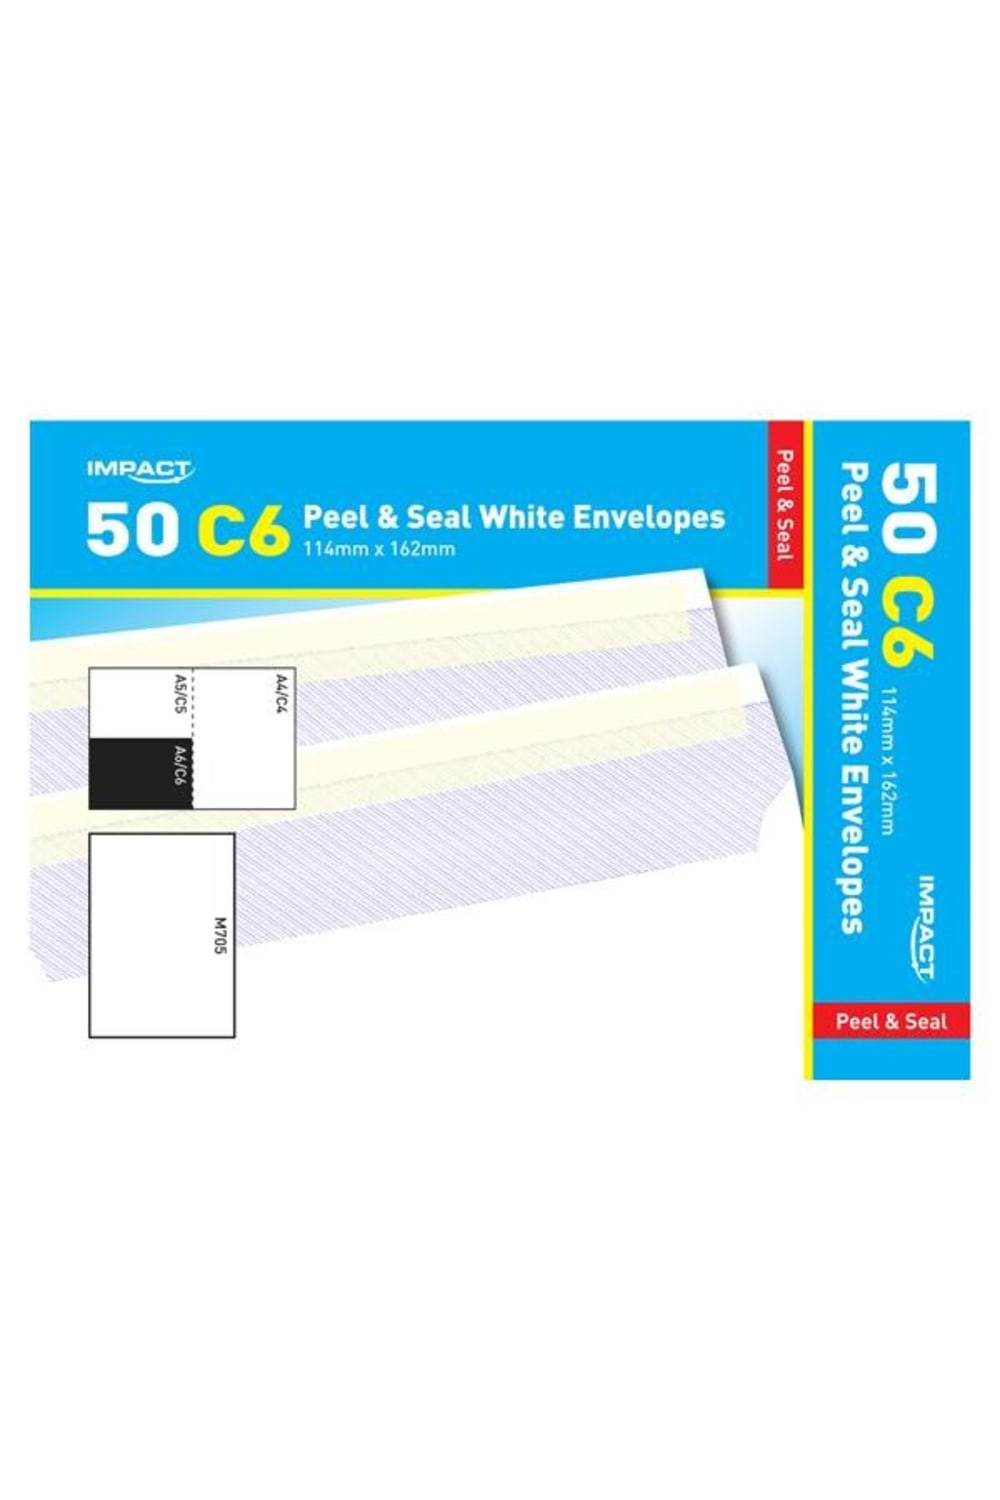 C6 Self Seal Envelope - White